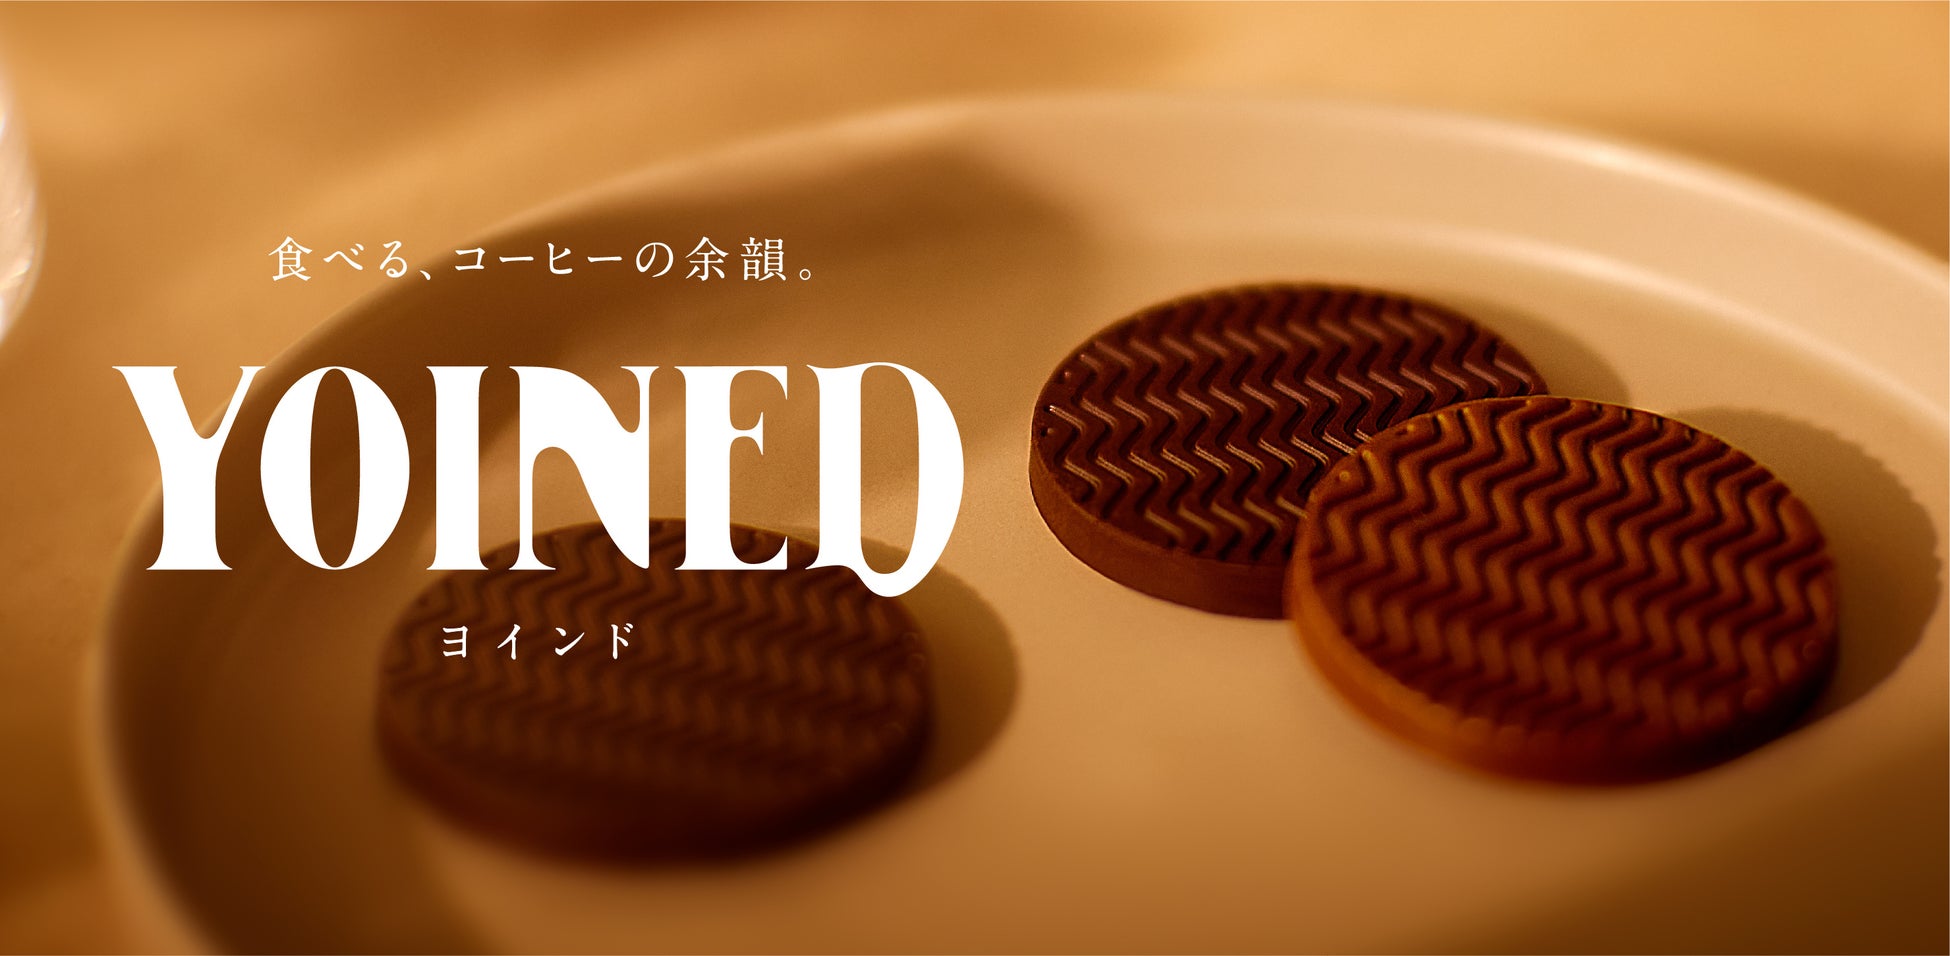 売切れ必至！貴重な国産ほおずきを使用したボンボンチョコレート「ゴールデンベリーチョコレート」をカファレル神戸北野本店限定で販売